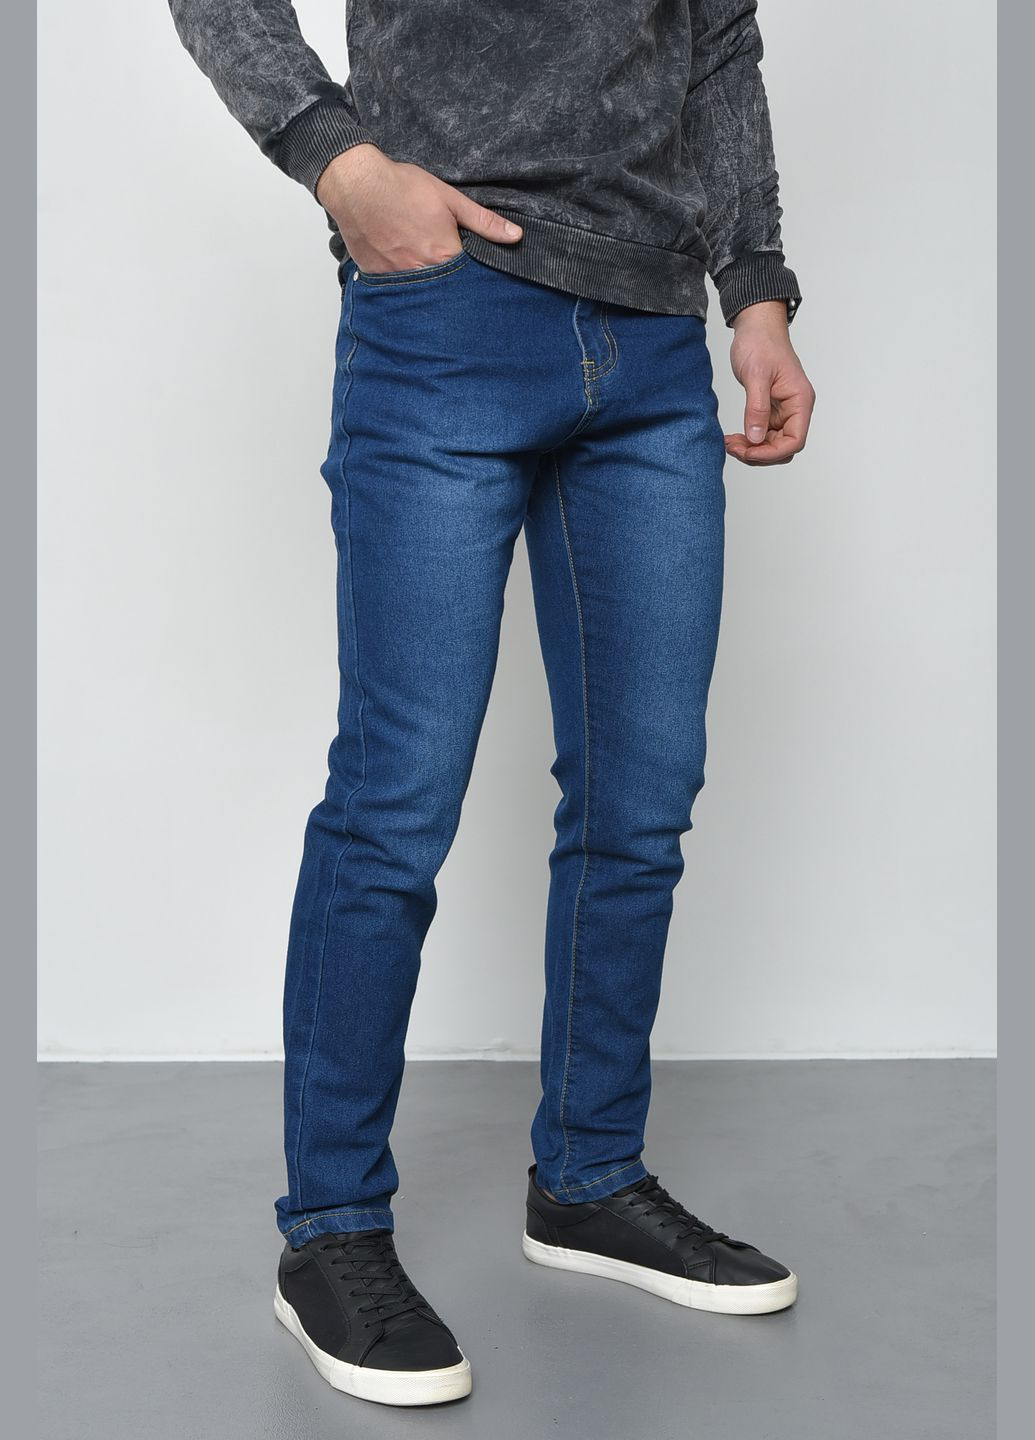 Темно-синие демисезонные джинсы мужские темно-синие Let's Shop